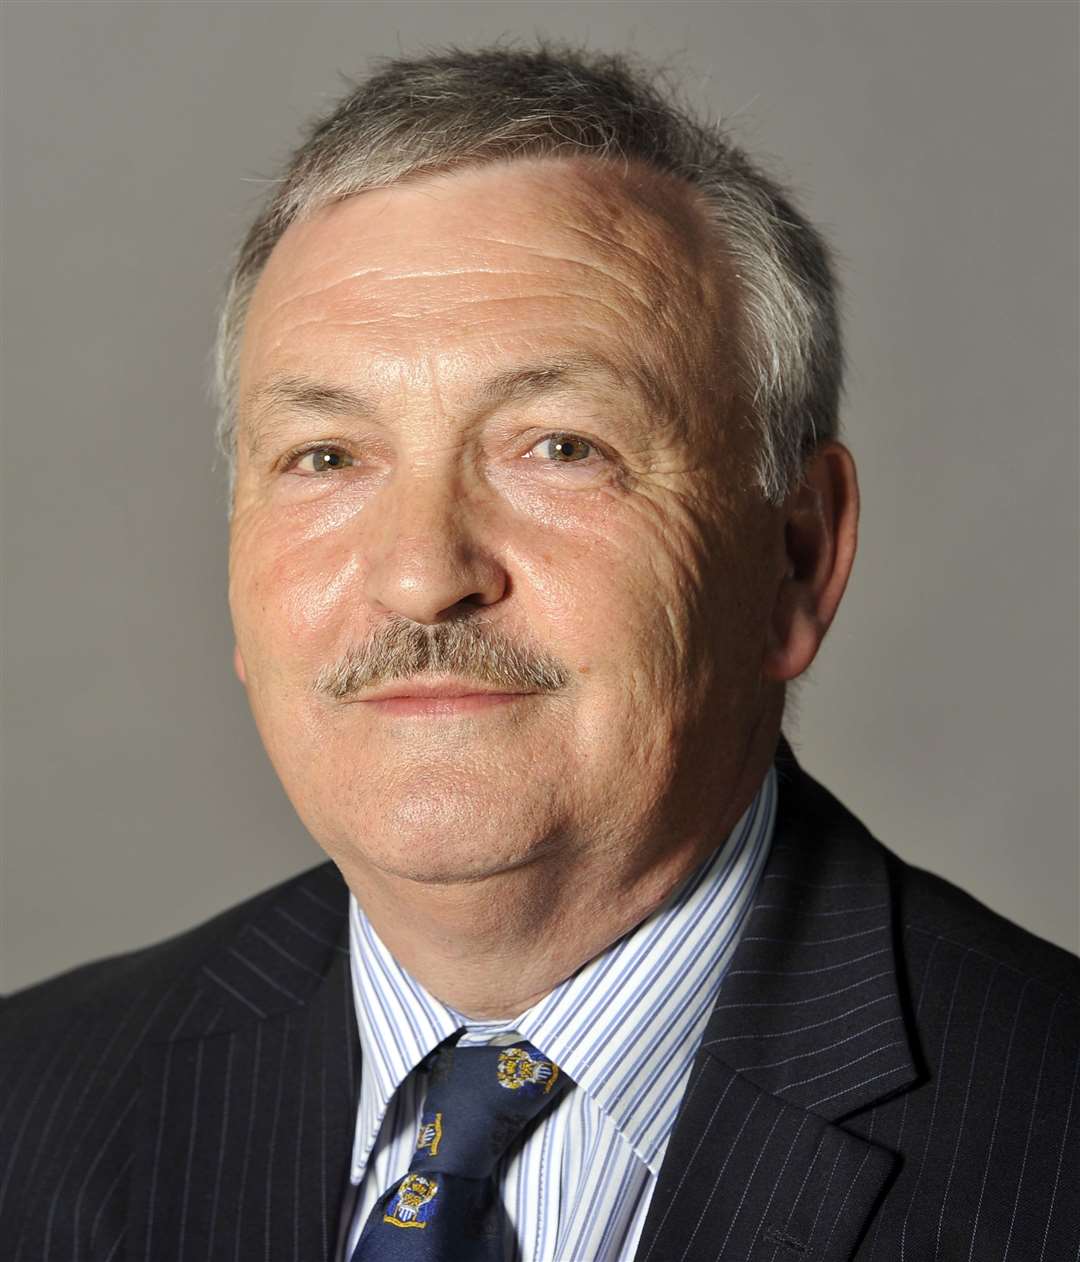 Council leader Cllr Alan Jarrett